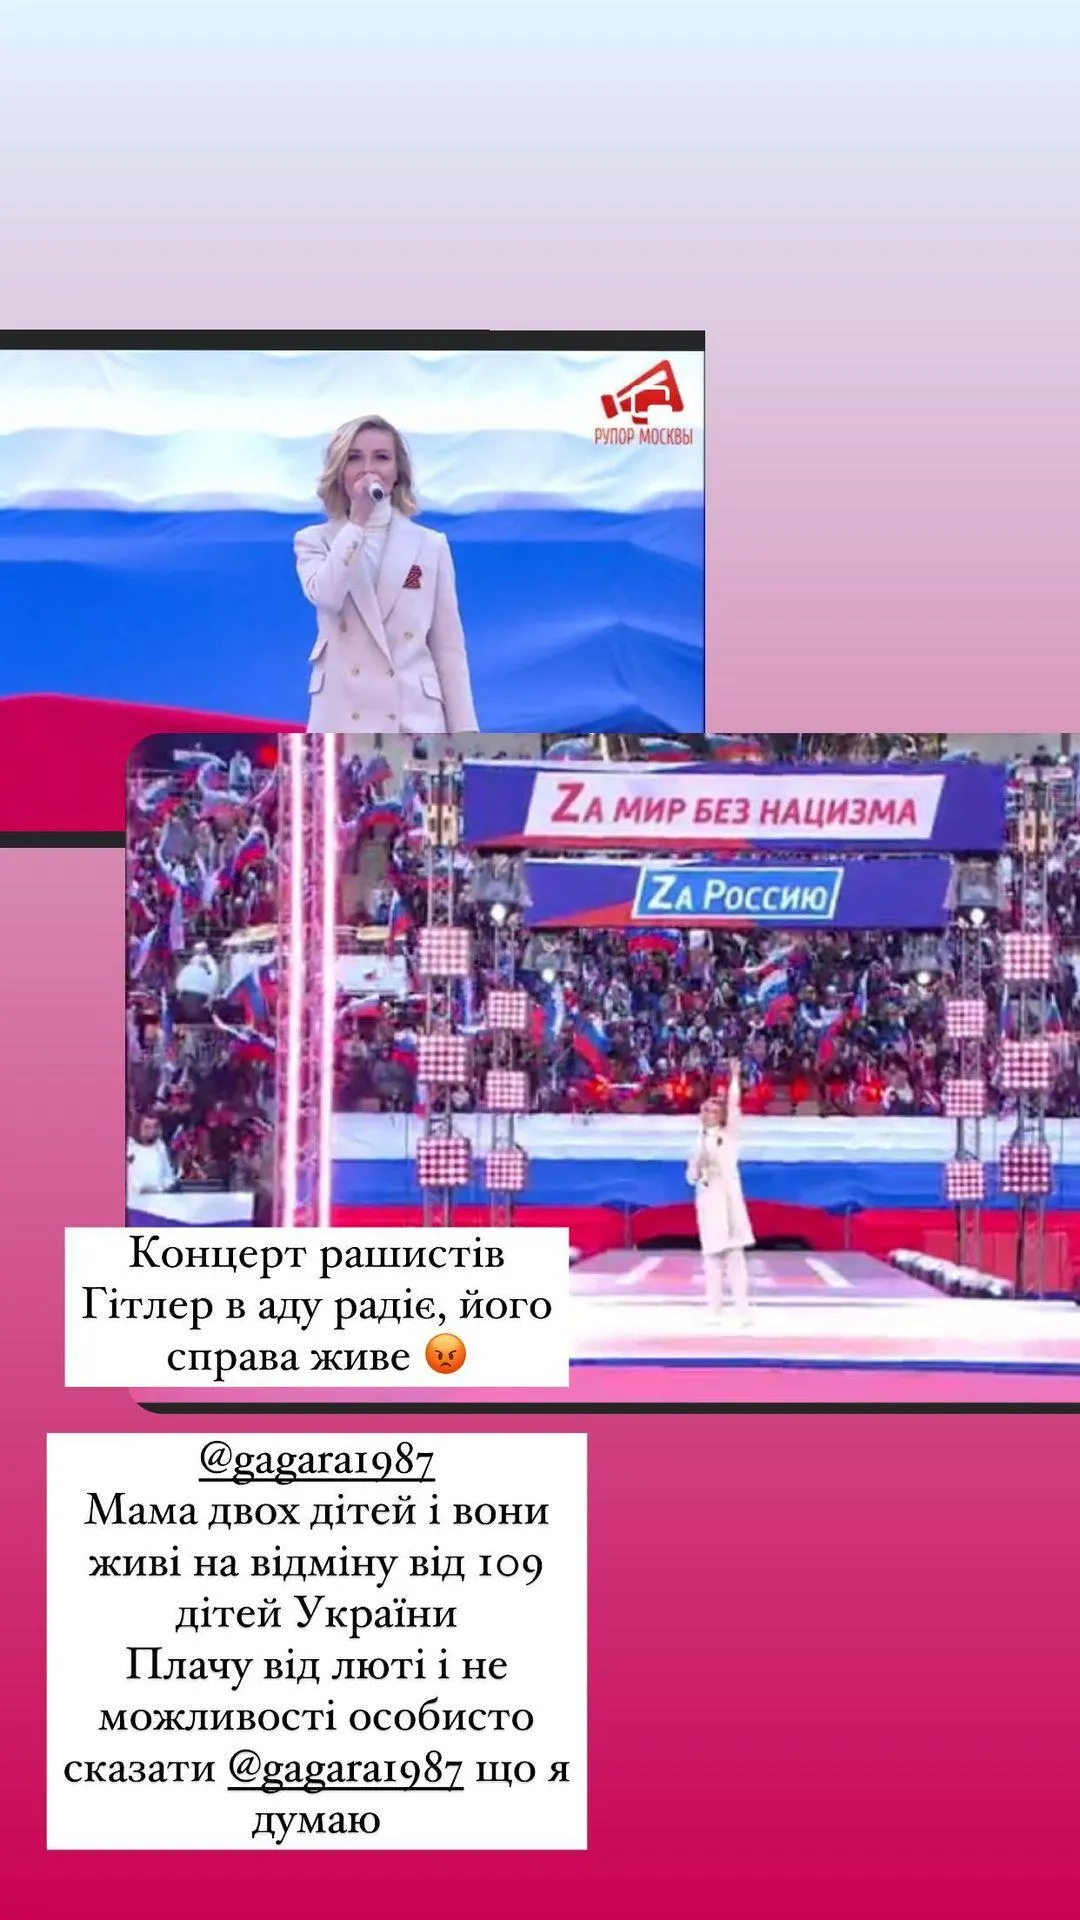 Полина Гагарина на пропагандистском митинге-концерте в Москве